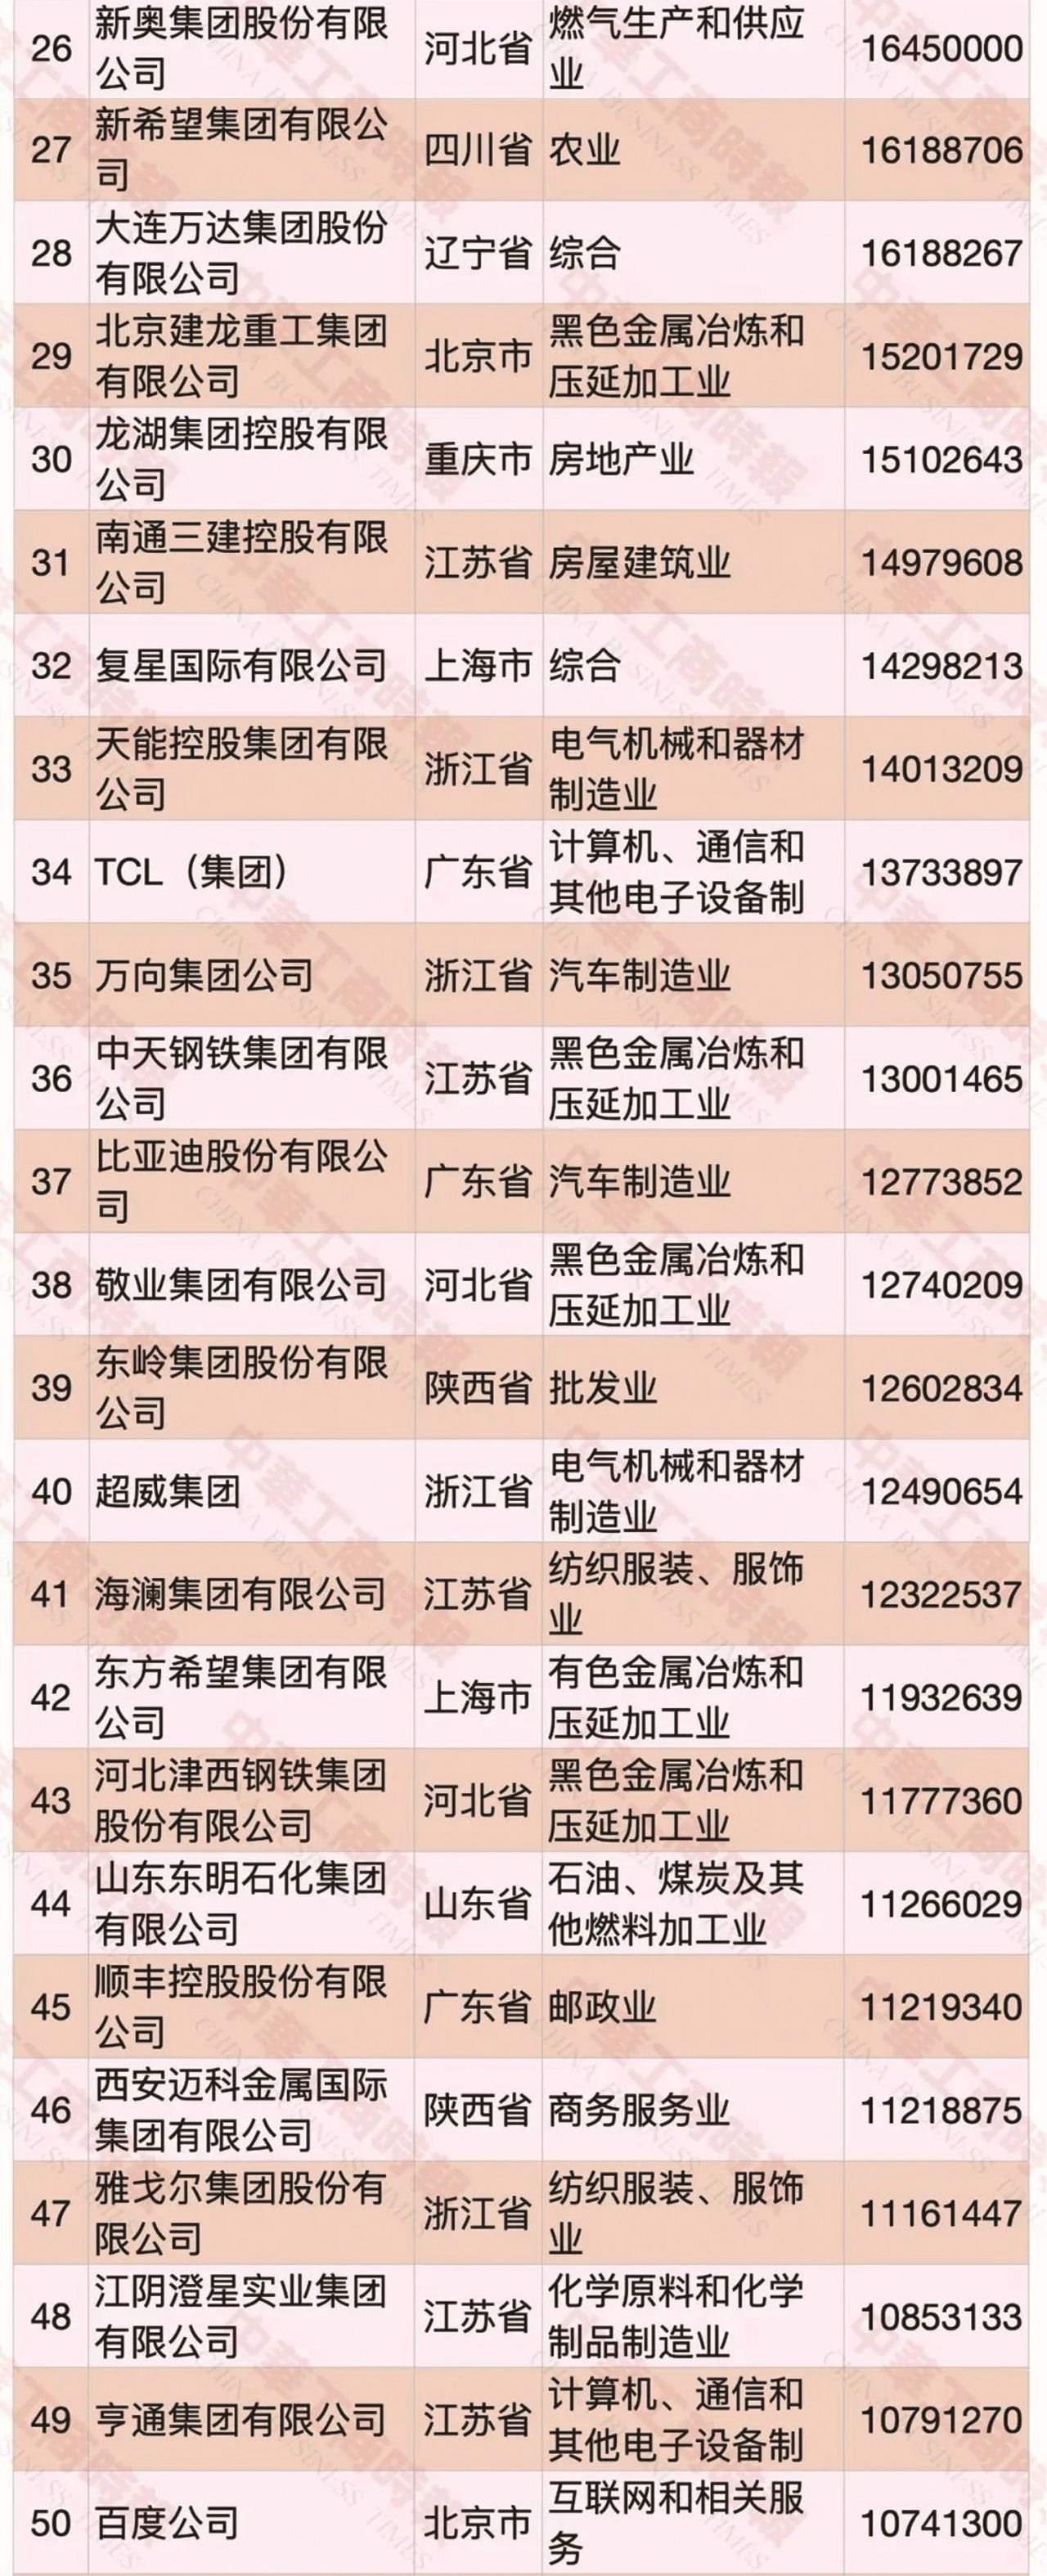 9月10日上午,工商联在北京发布了《2020中国民营企业五百强榜单》。多弗国际控股集团以1753